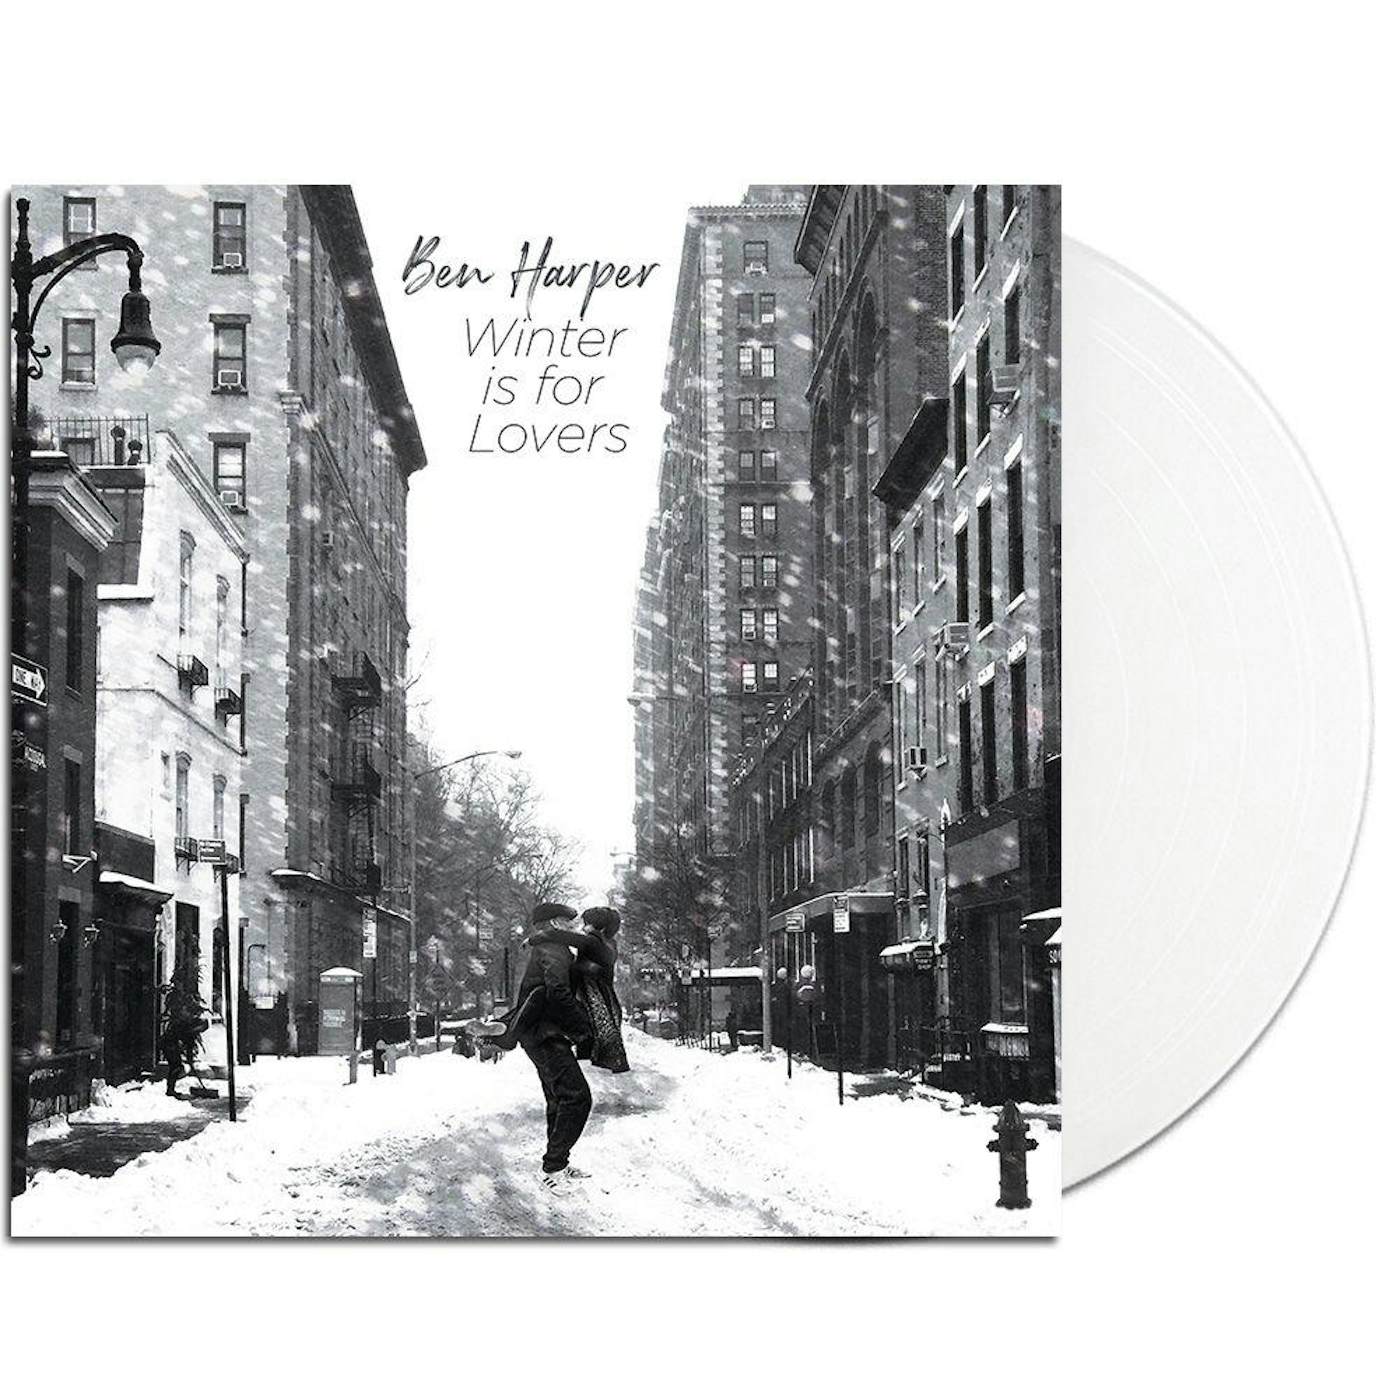 Ben Harper Winter Is For Lovers (Opaque White Vinyl Vinyl Record